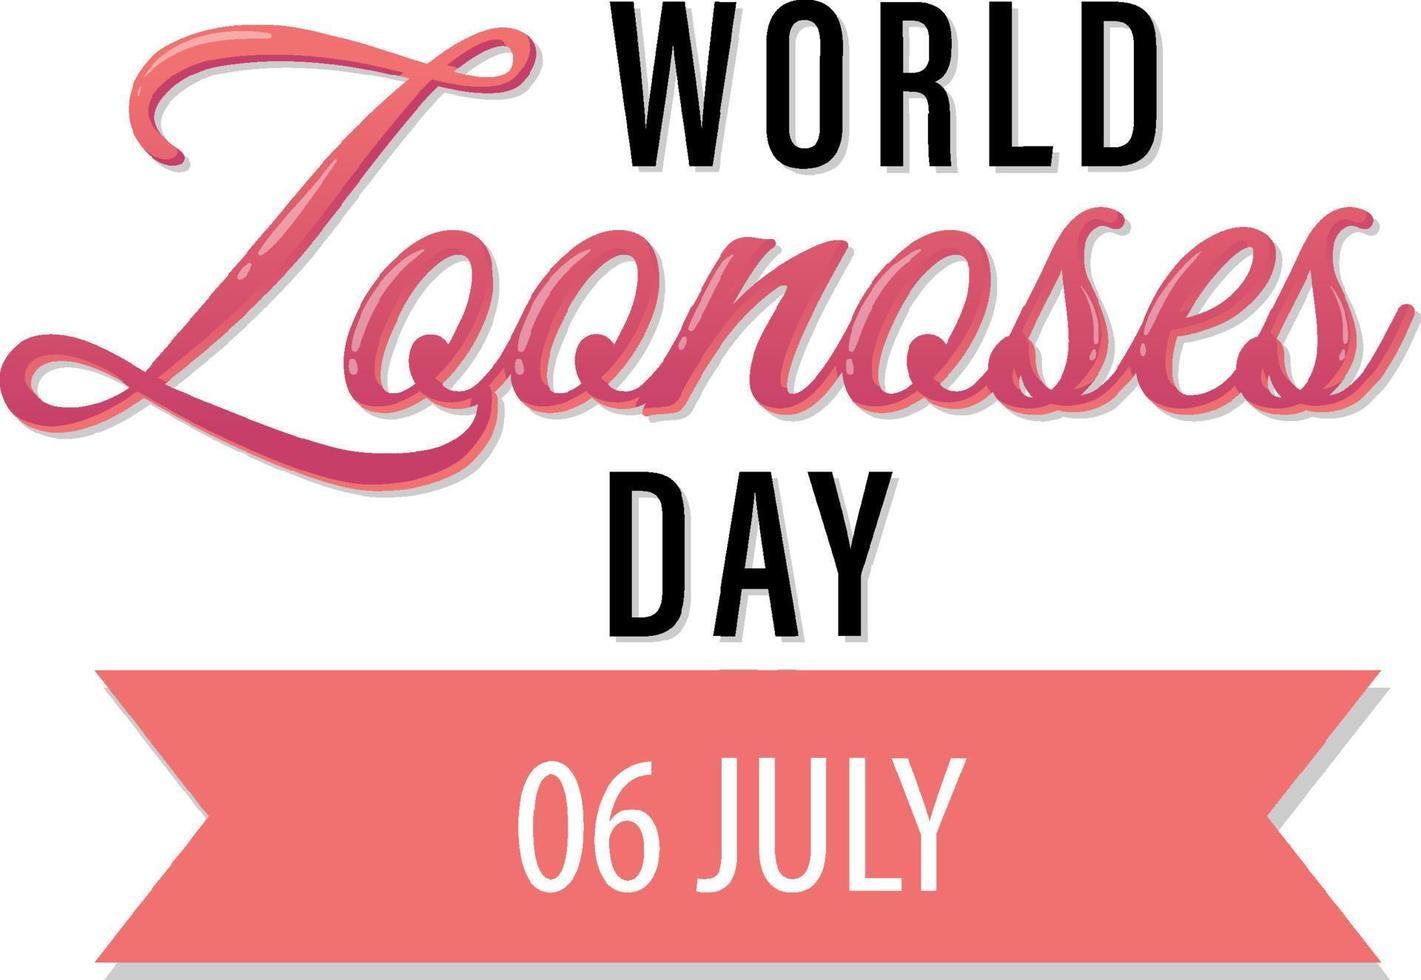 diseño del cartel del día mundial de las zoonosis el 6 de julio vector